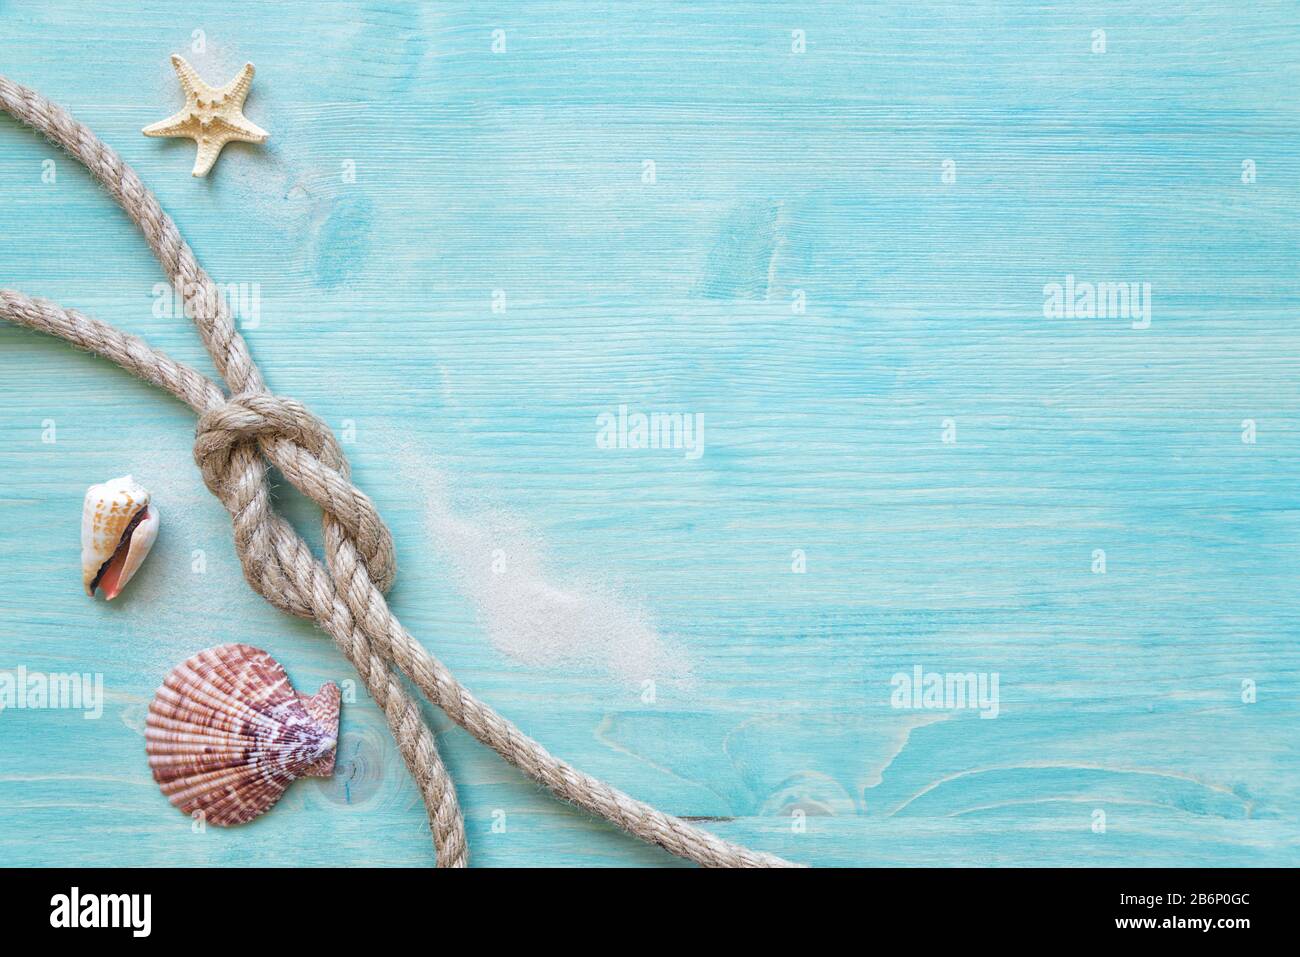 La corde de chanvre rugueuse liée au noeud marin, les coquillages et les étoiles de mer sont sur le fond de la terrasse en bois bleu délavé. Concept marin Banque D'Images